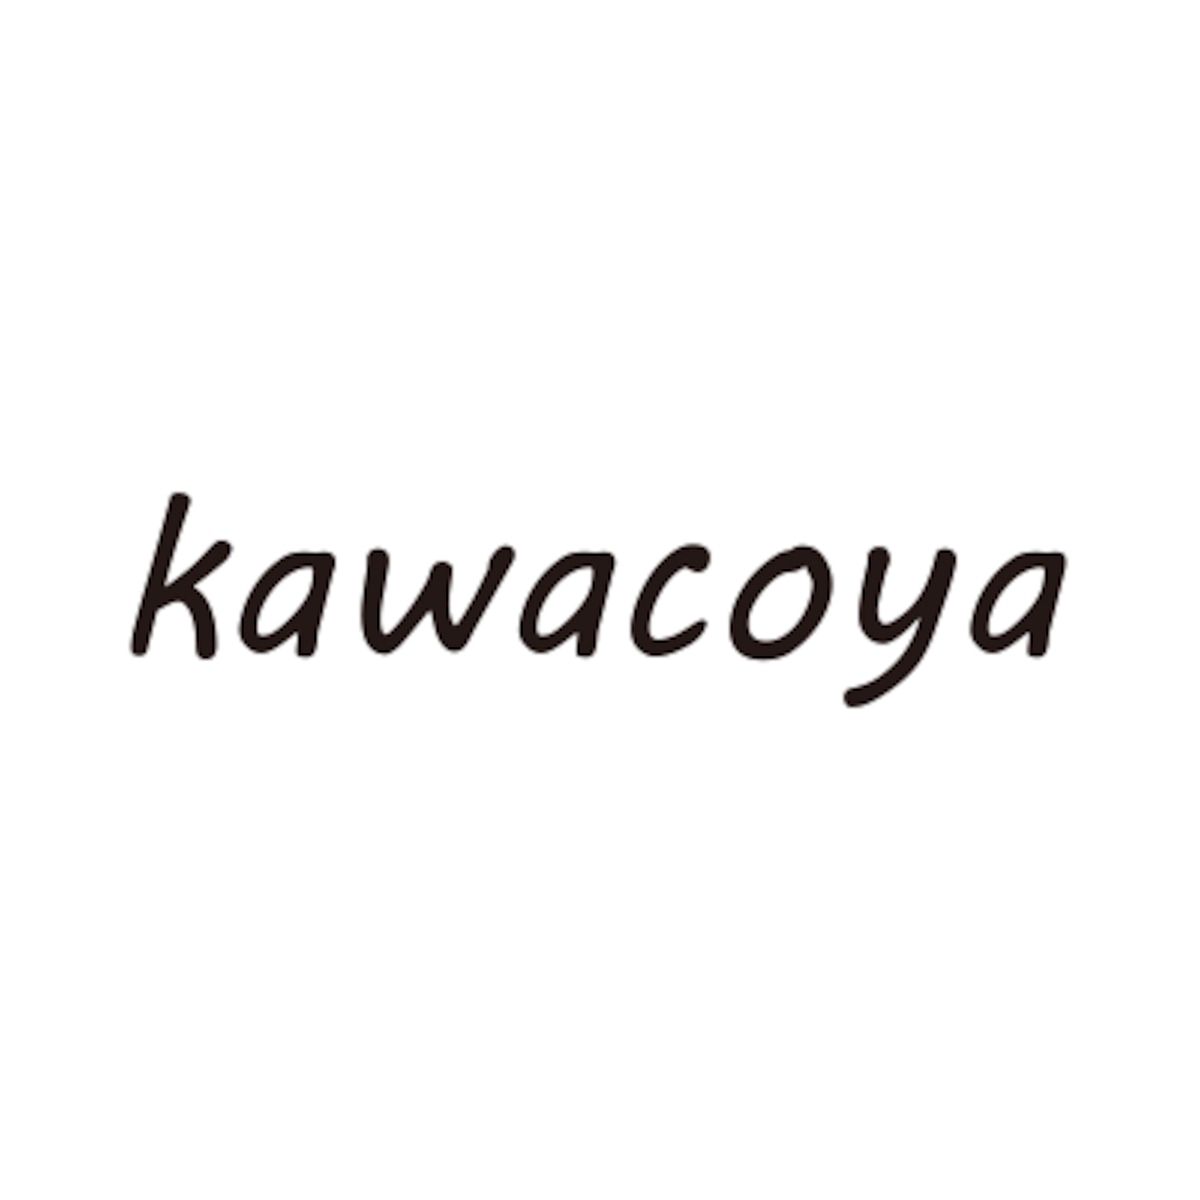 kawacoya